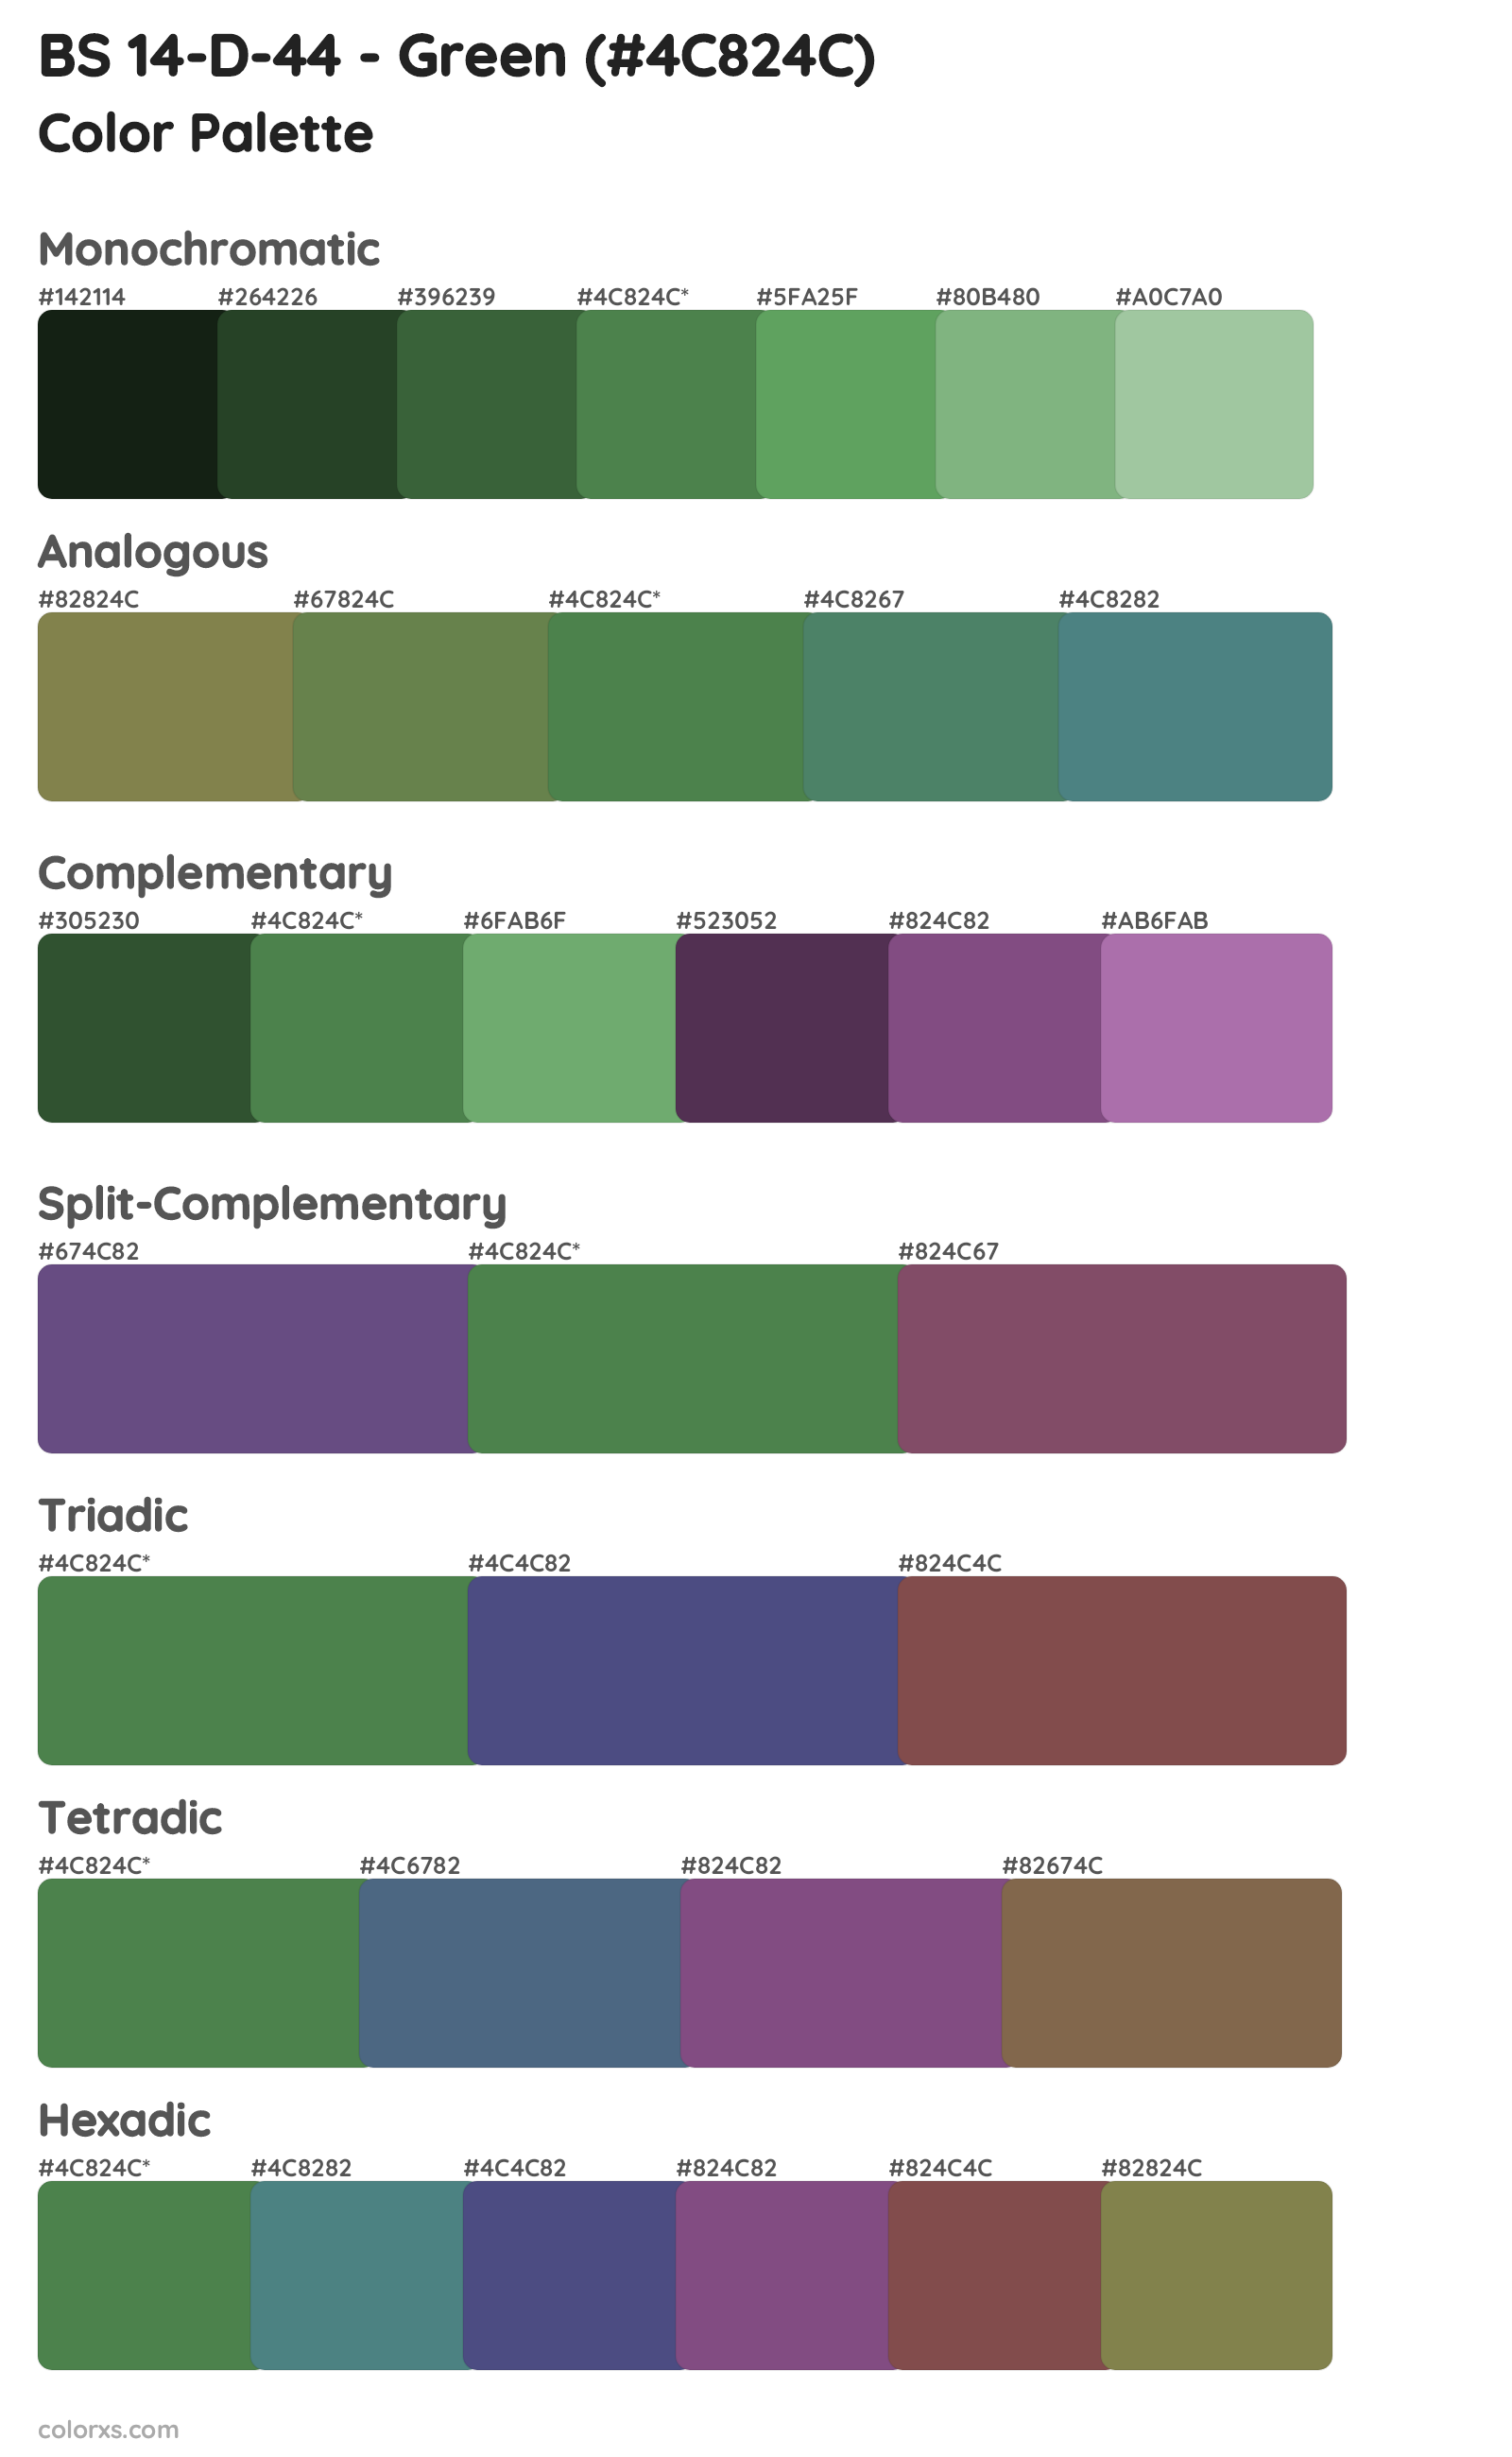 BS 14-D-44 - Green Color Scheme Palettes